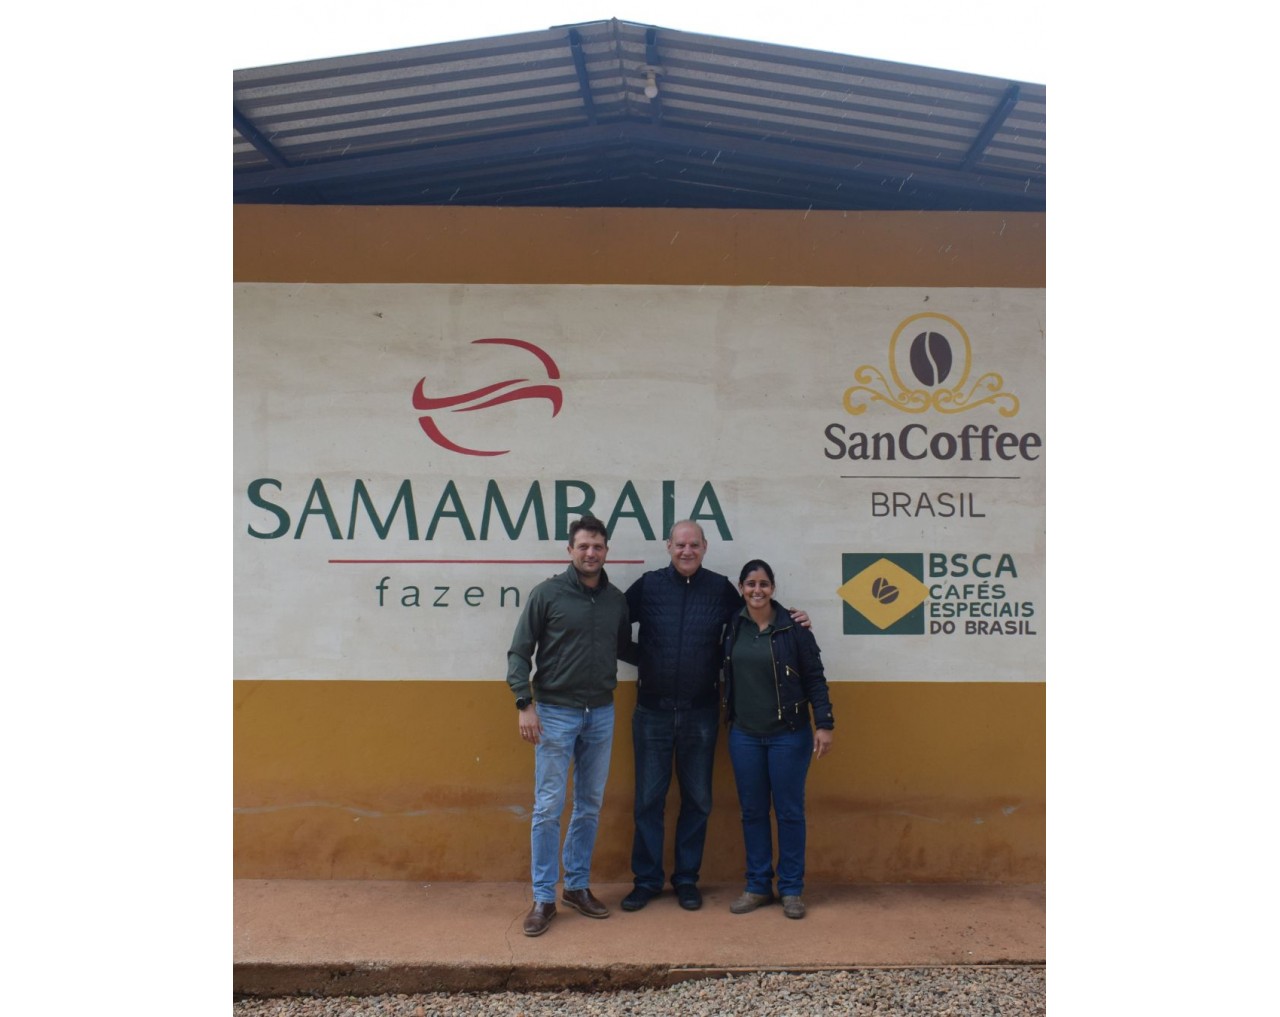 Fazenda Samambaia / Catigua - Brazil